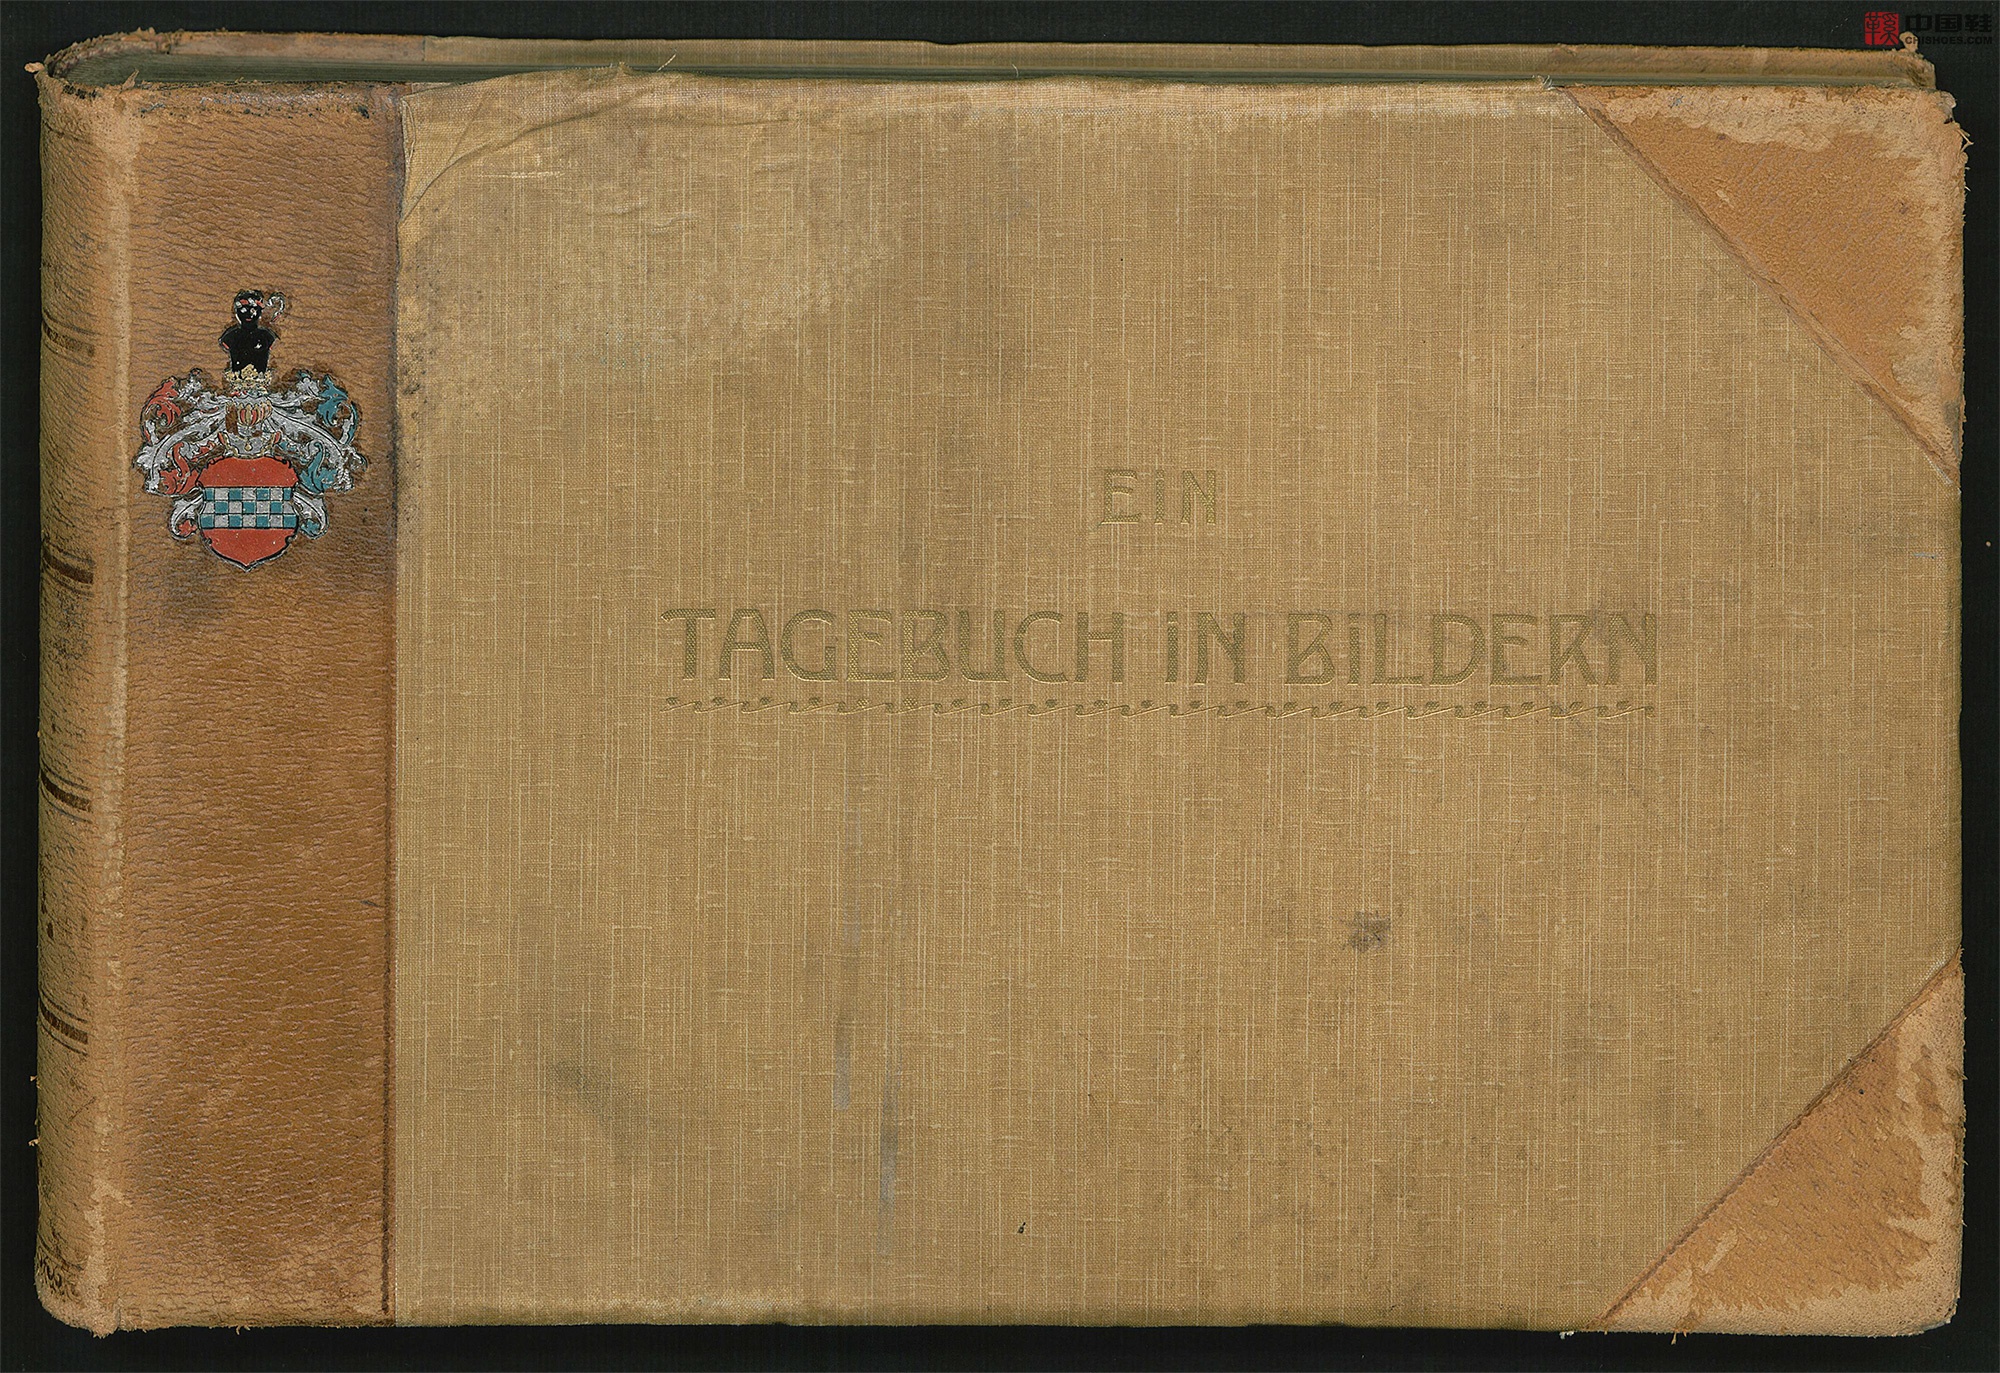 穆默的摄影日记.Ein Tagebuch in Bildern.德.Alfons von Mumm著.1902年_Page_001.jpg